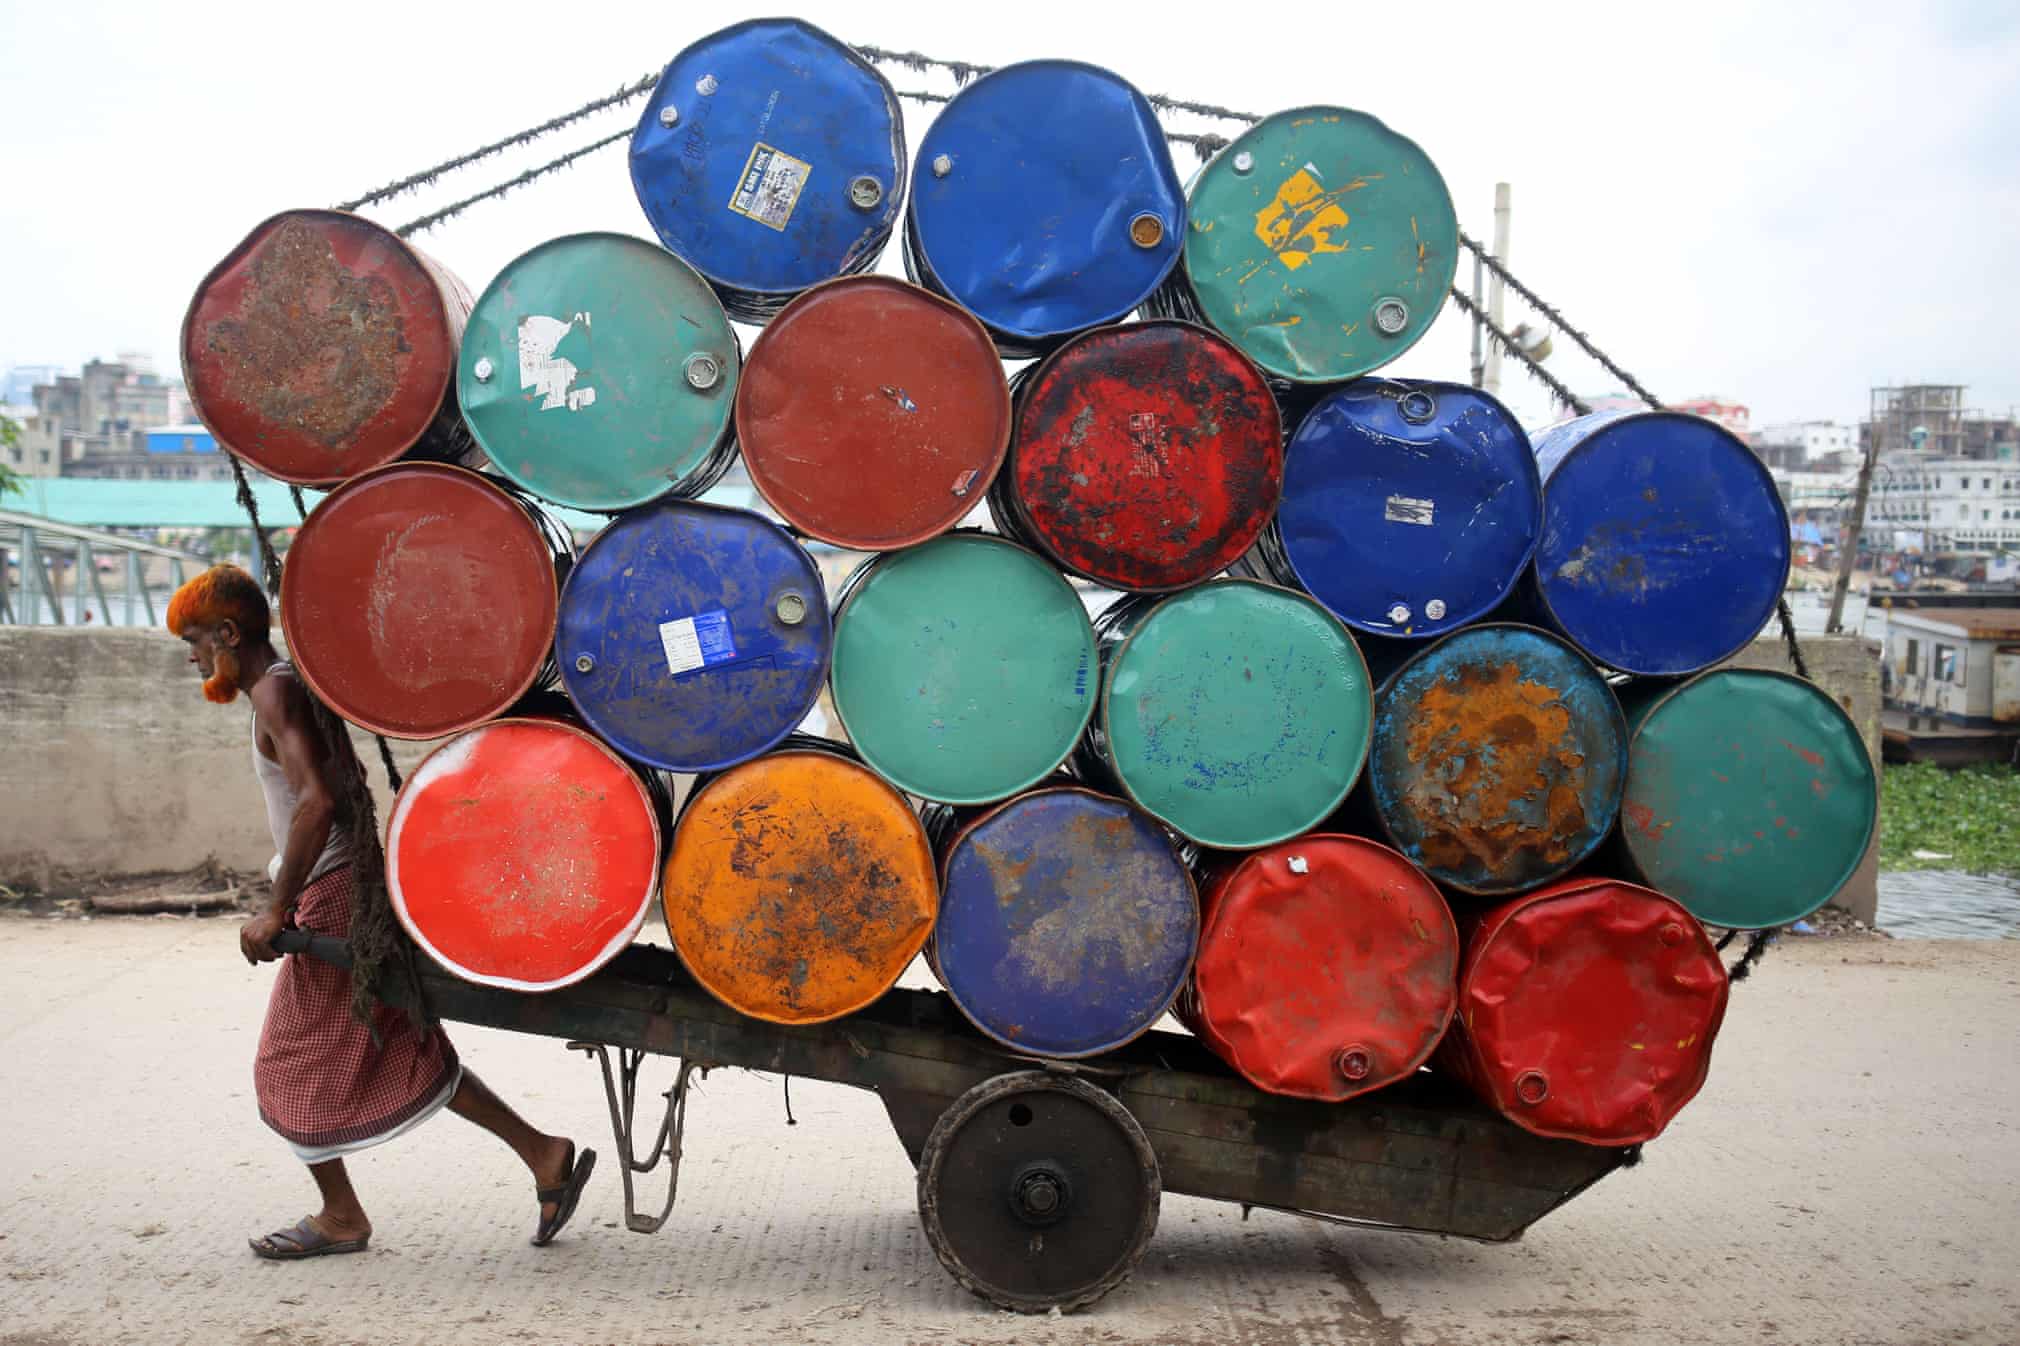 حمل انبوه بشکه های نفت در شهر داکا بنگلادش + عکس